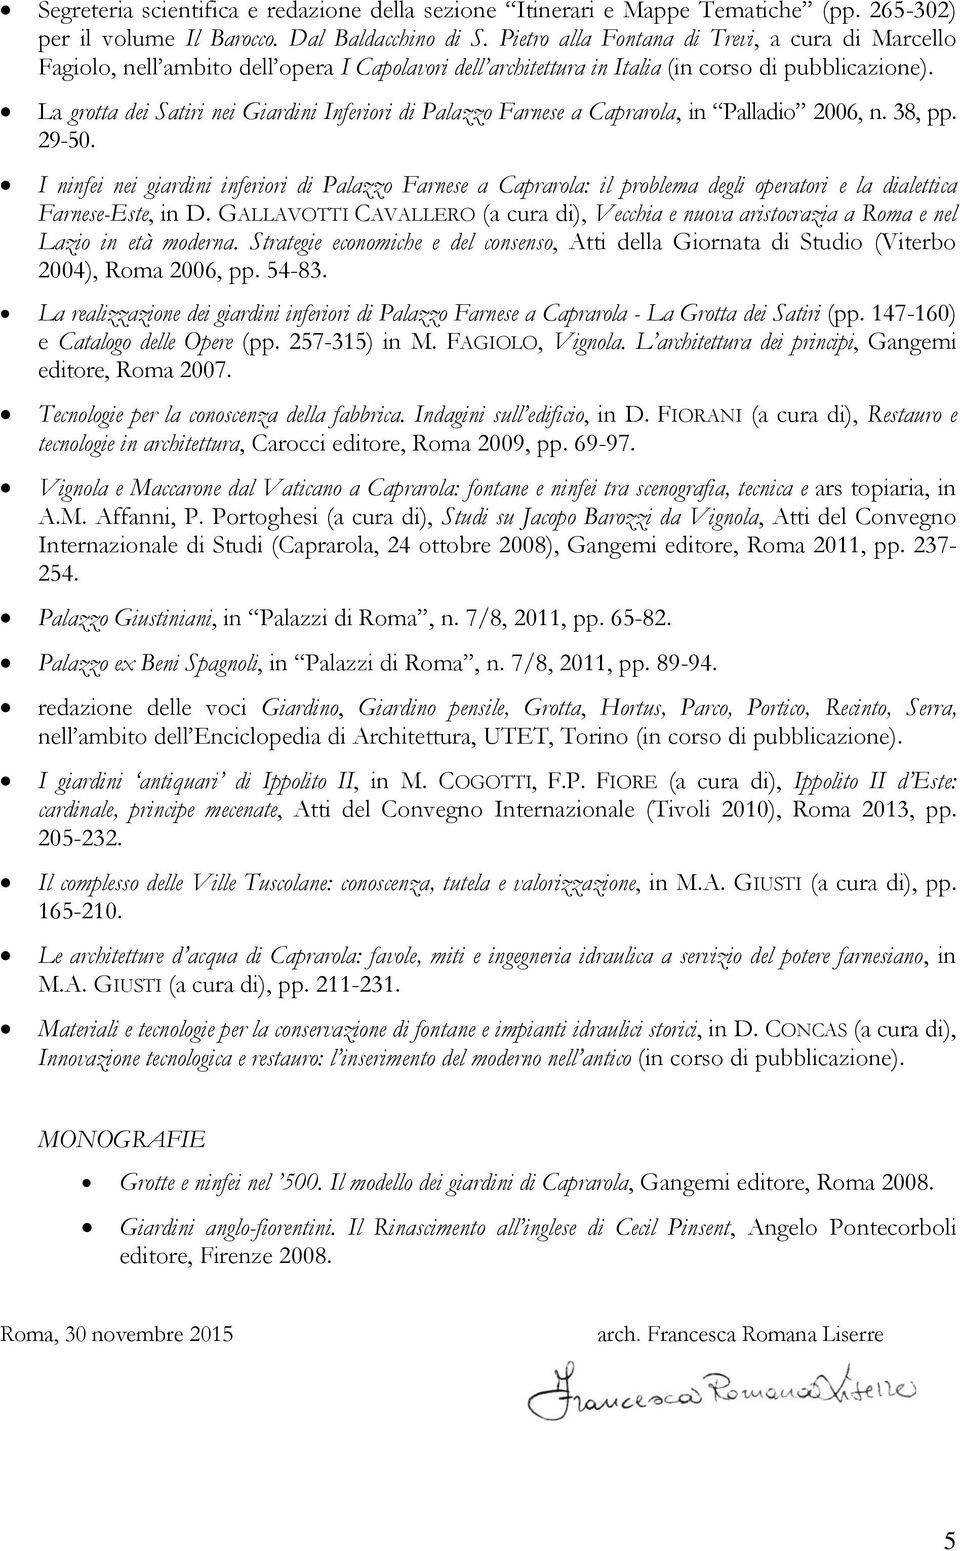 La grotta dei Satiri nei Giardini Inferiori di Palazzo Farnese a Caprarola, in Palladio 2006, n. 38, pp. 29-50.